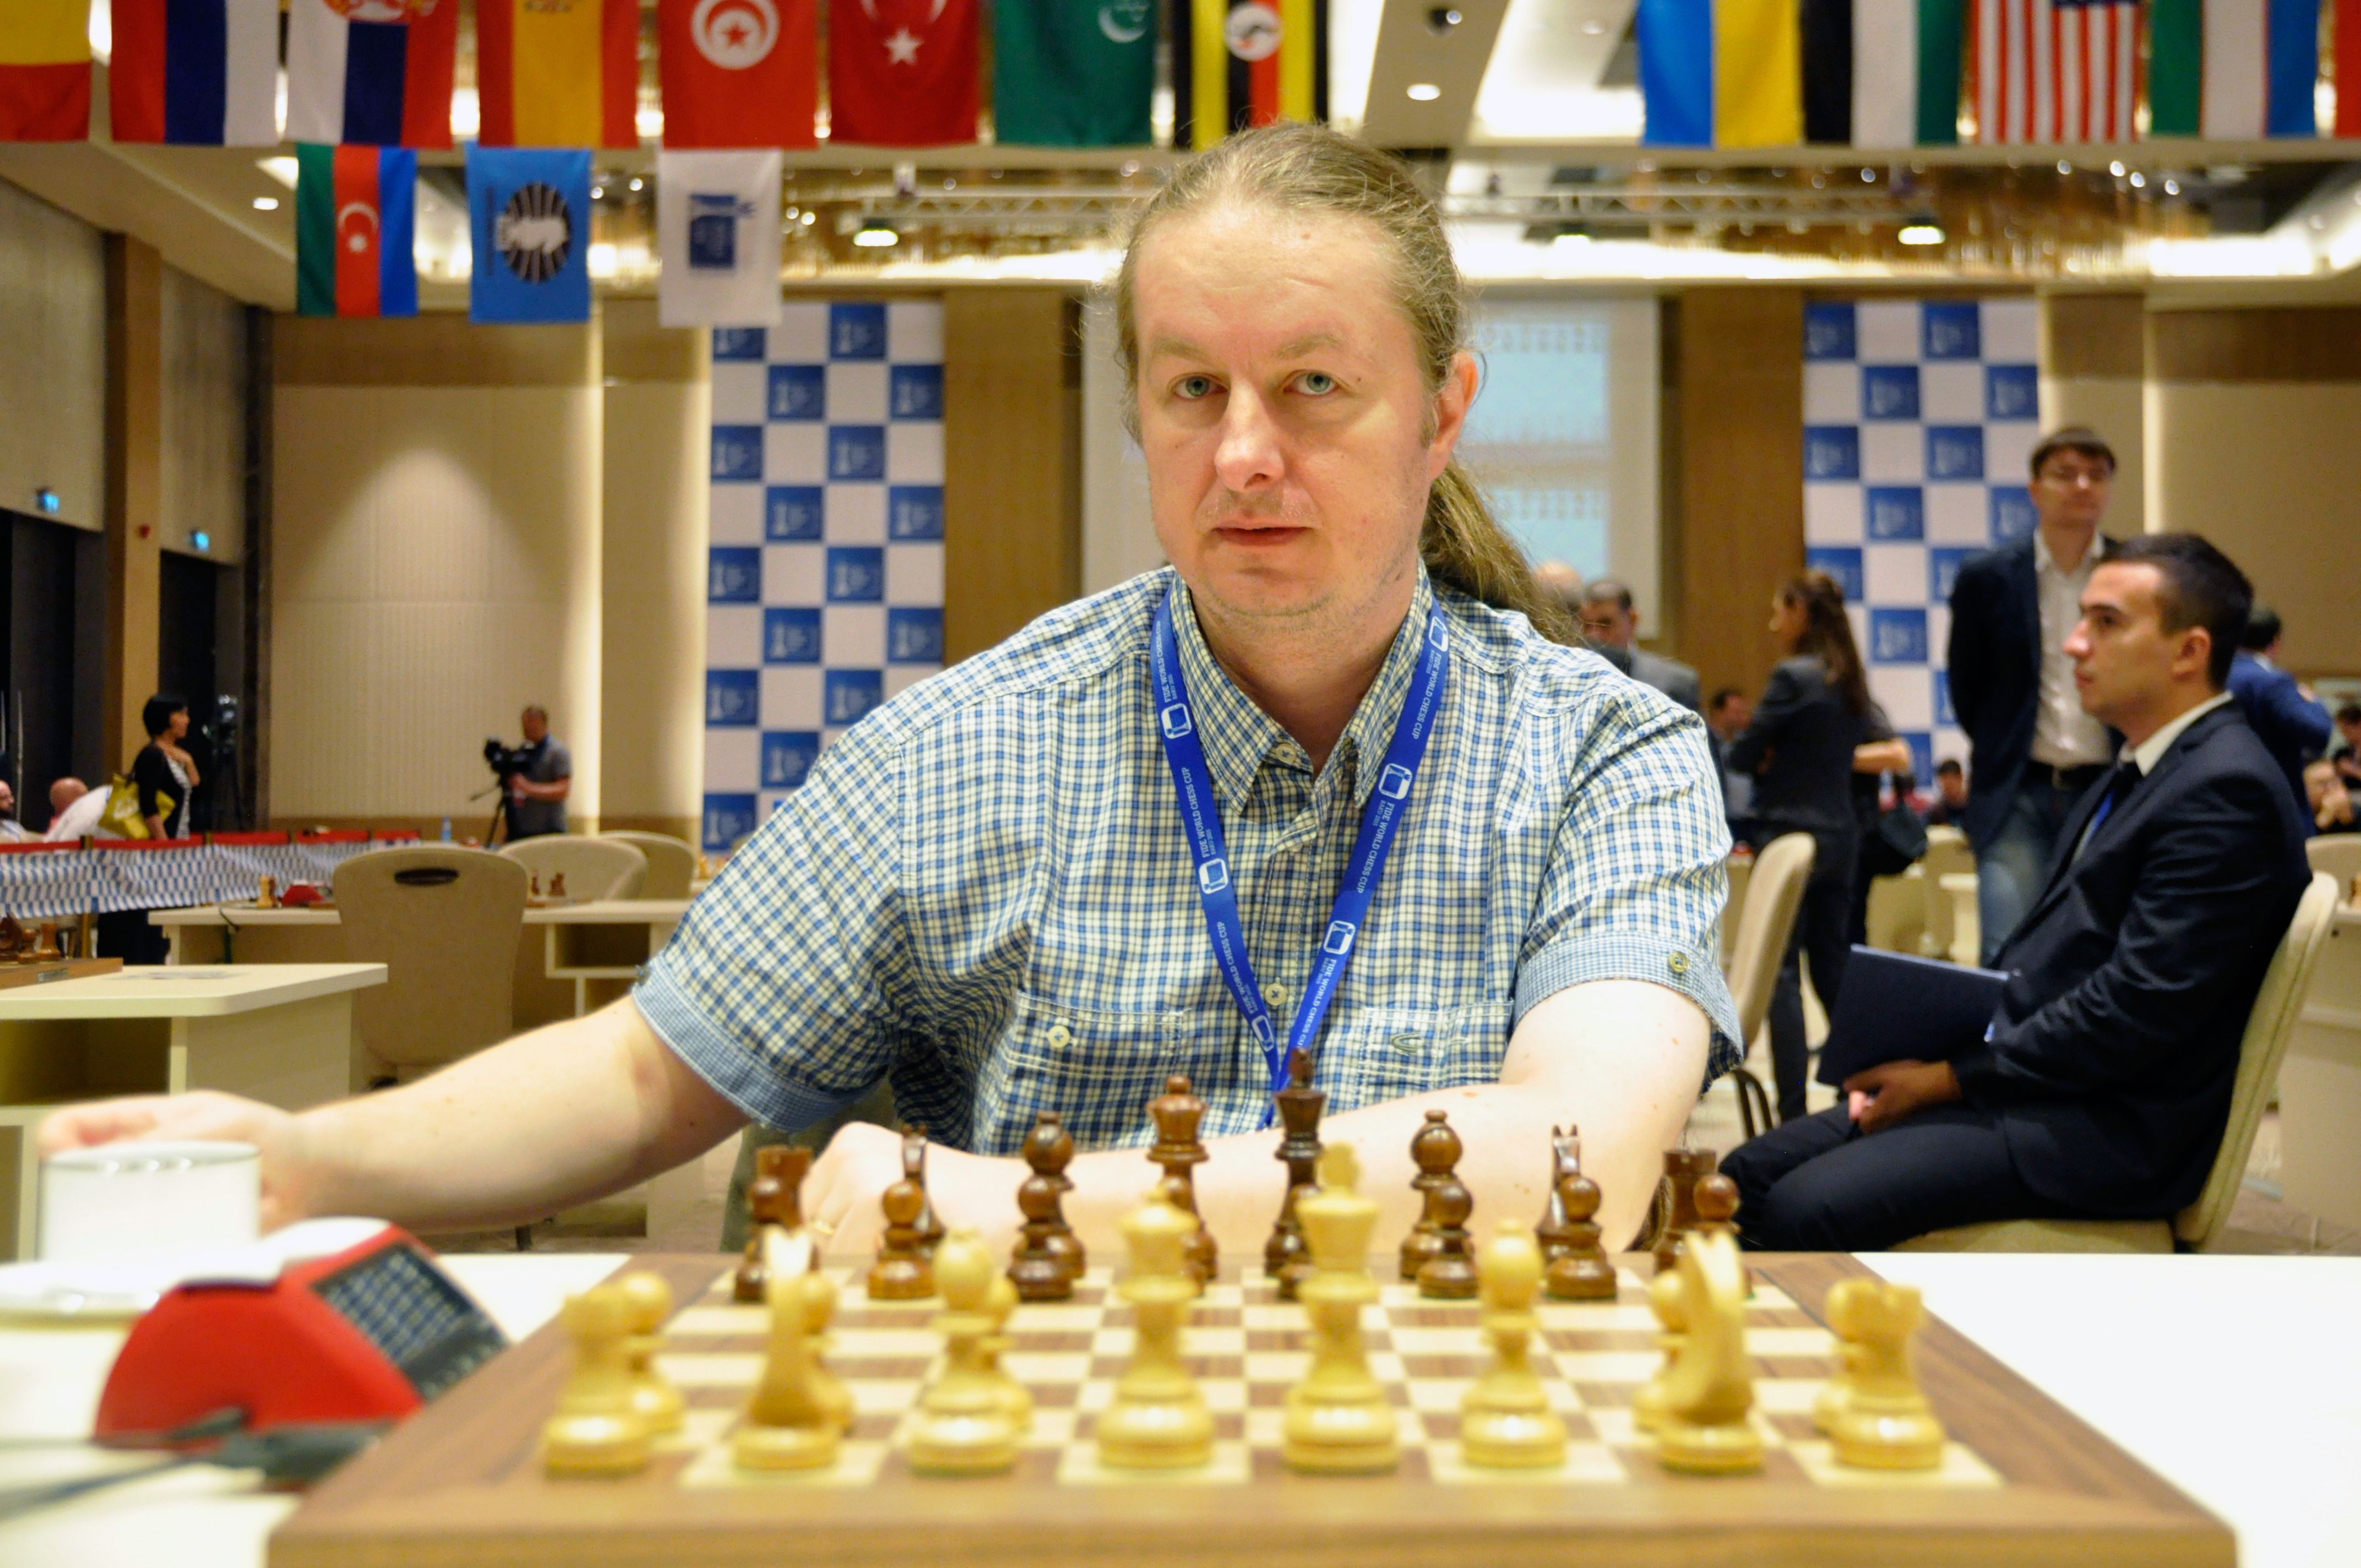 Olimpíada Online da FIDE: Quais países avançaram para a próxima